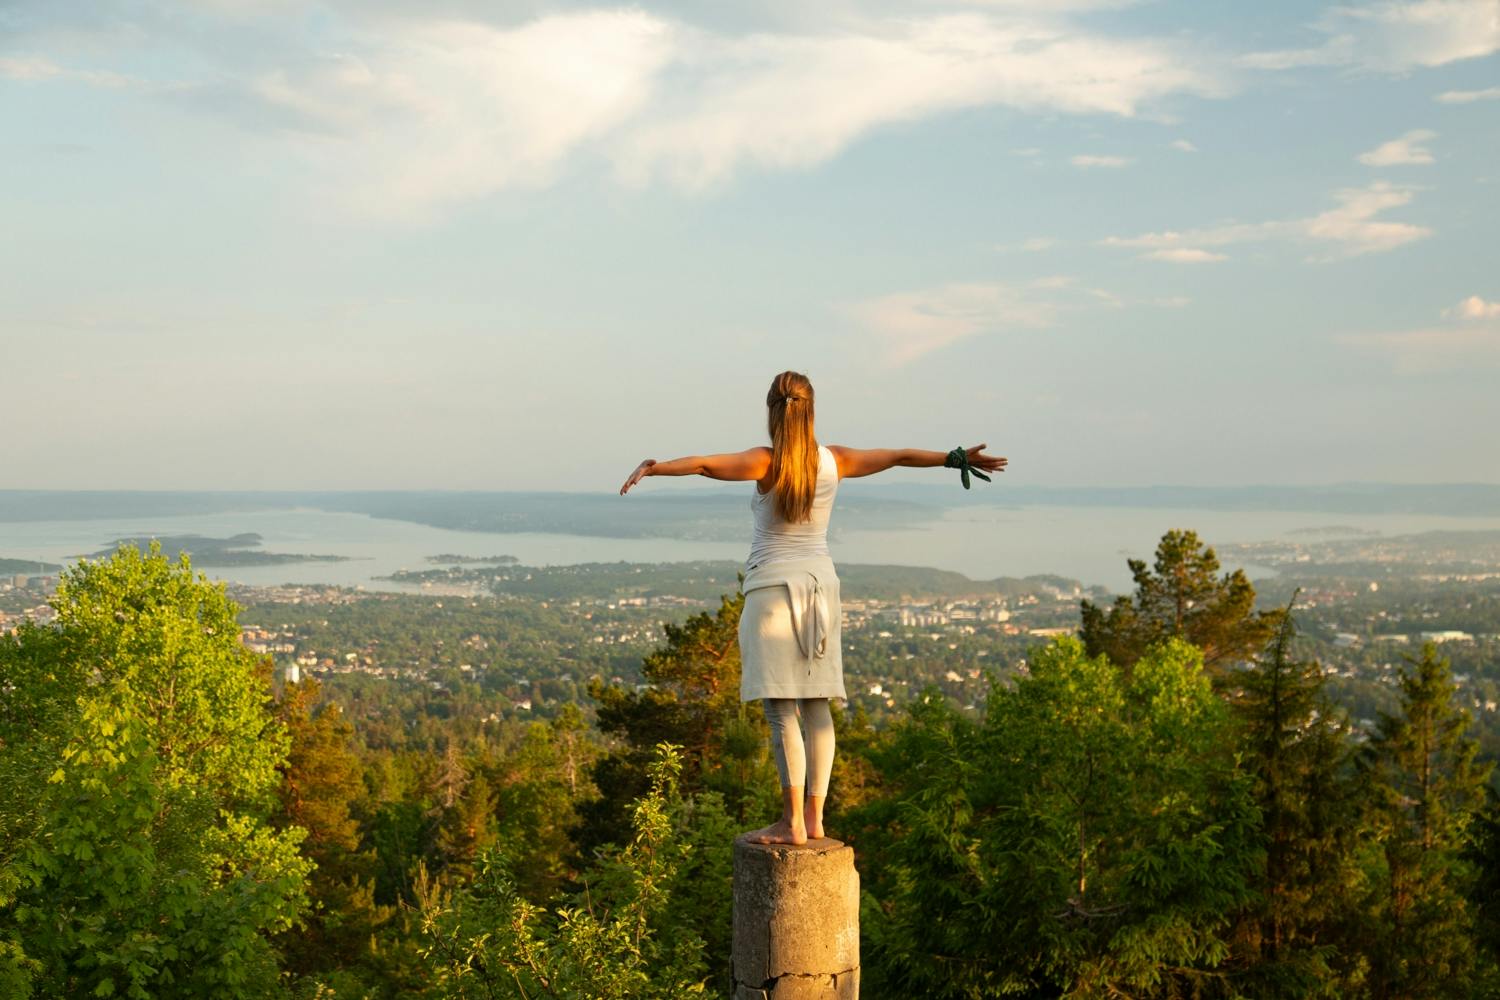 Bewundern Sie während eines Rundgangs die malerische Aussicht auf den Osloer Fjord